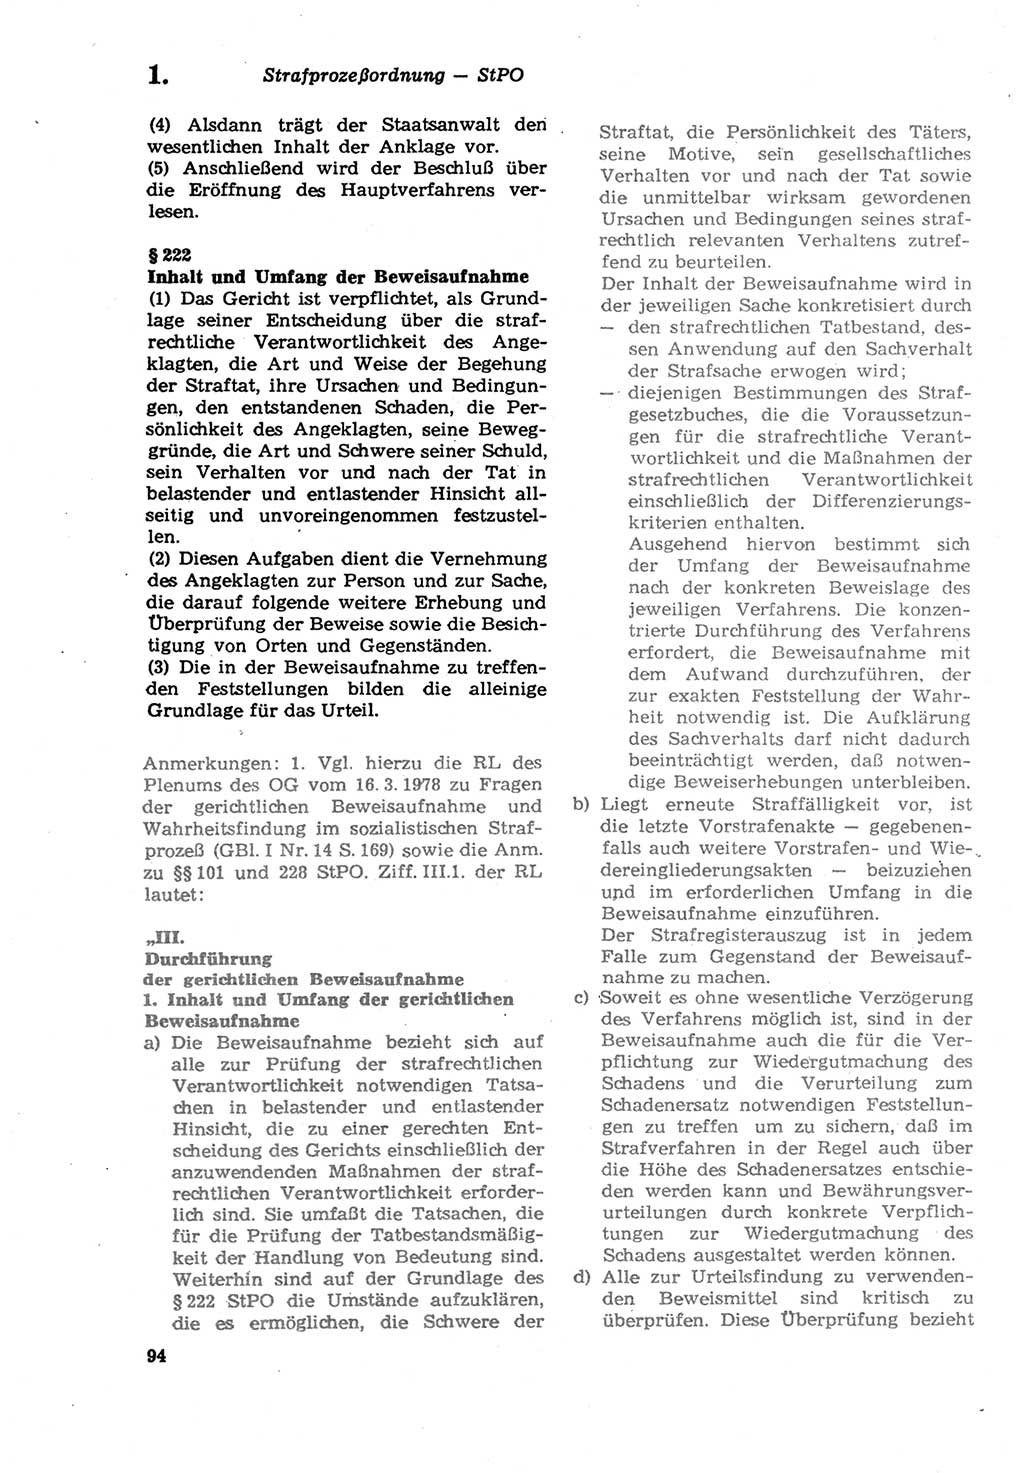 Strafprozeßordnung (StPO) der Deutschen Demokratischen Republik (DDR) sowie angrenzende Gesetze und Bestimmungen 1979, Seite 94 (StPO DDR Ges. Best. 1979, S. 94)